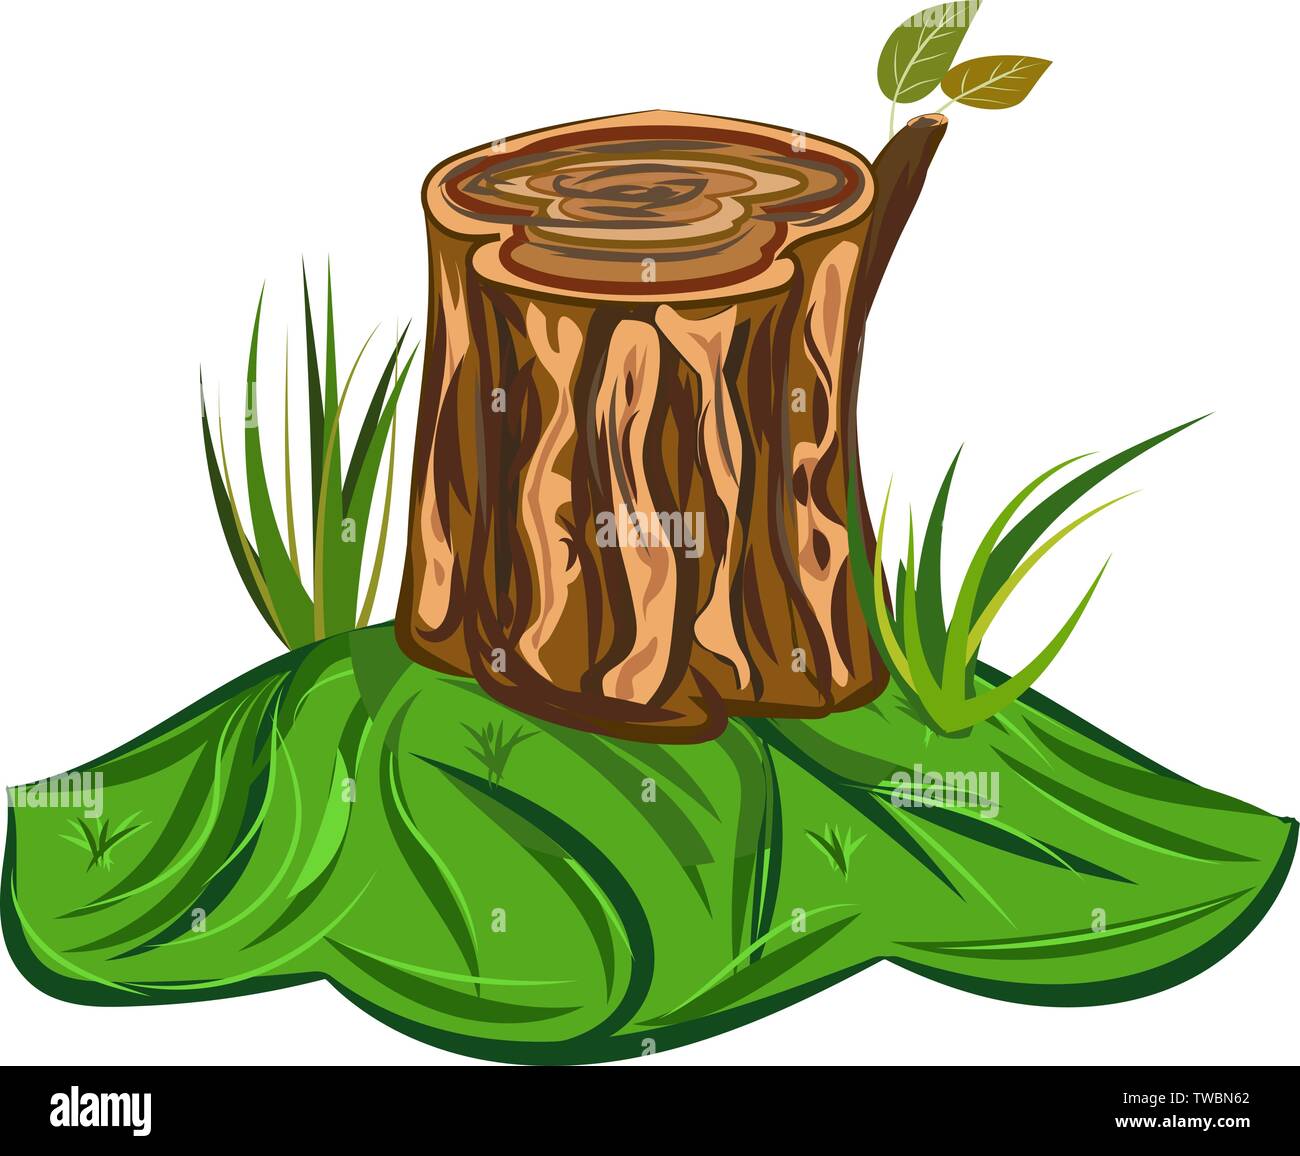 Souche d'arbre vector Illustration d'un dessin de grande souche d'arbre avec des feuilles banc et quelques brins d'herbe Illustration de Vecteur